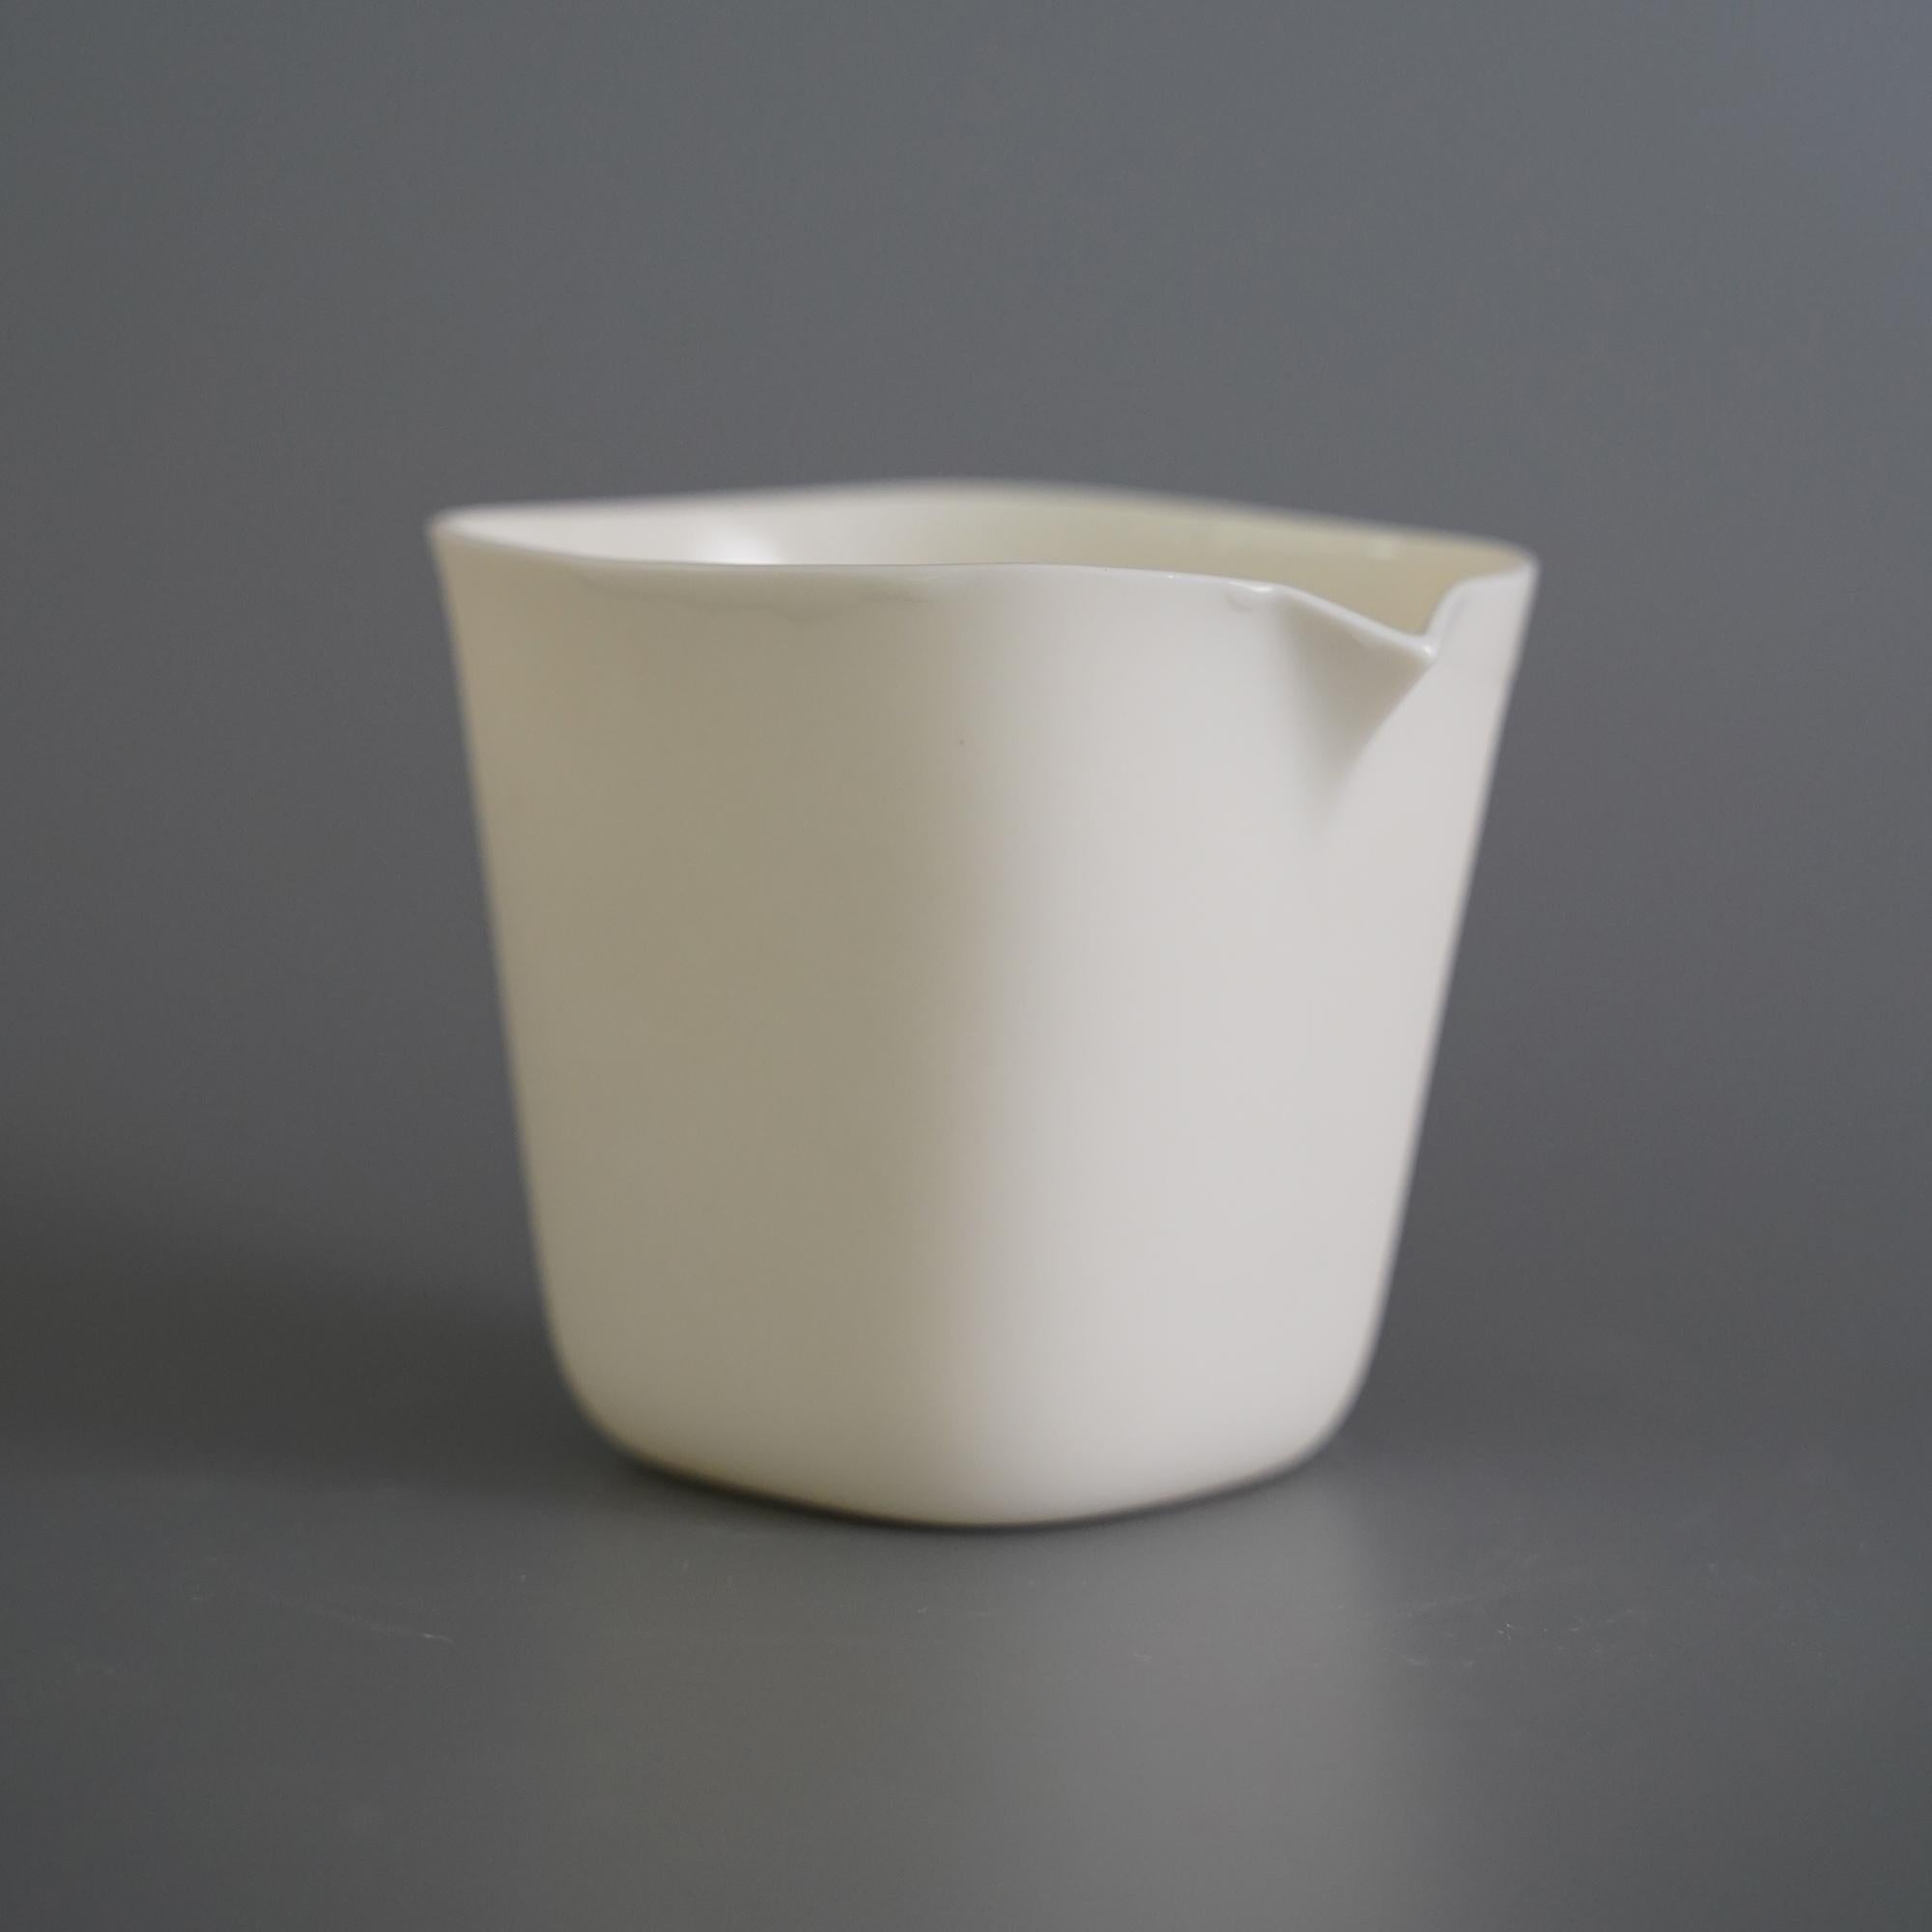 4er-Set Ceti Servierschüssel von Studio Cúze
Abmessungen: D 9 x B 8 x H 8 cm
MATERIALIEN: Keramik

Ceti ist ein handgefertigter, weißer Keramikspender, der eine sehr glatte Oberfläche aufweist. Die Innenseite ist mit einer Glasur beschichtet, die